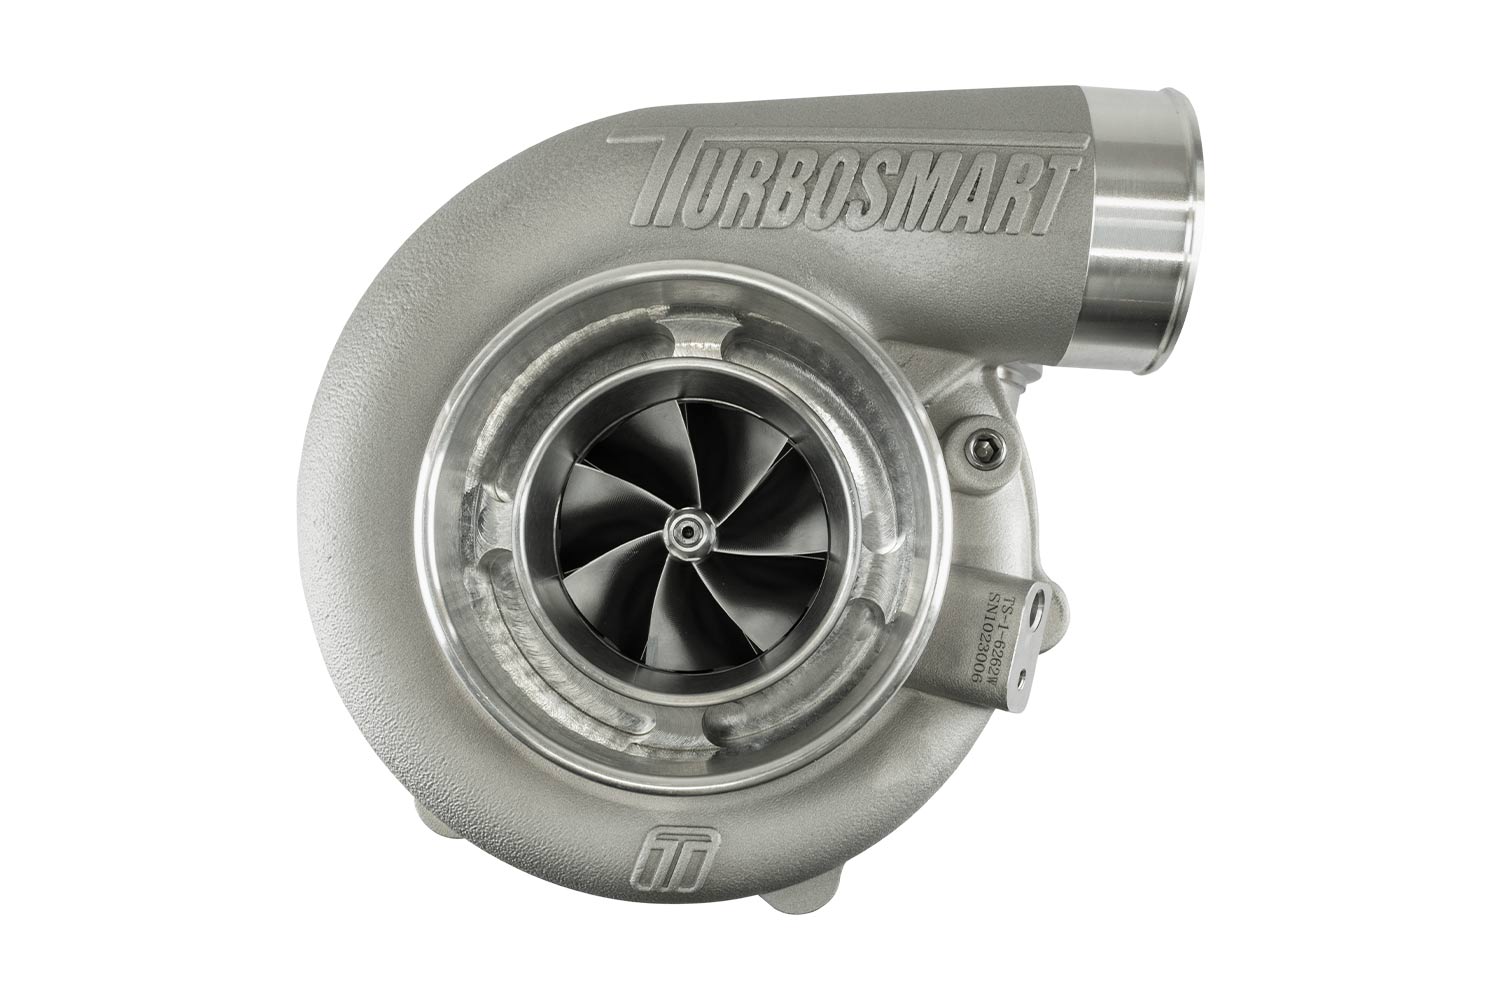 Turbosmart TURBO Water Cooled 6262 V-Band Inlet, V-Band Outlet, A/R 0.82 External Wastegate